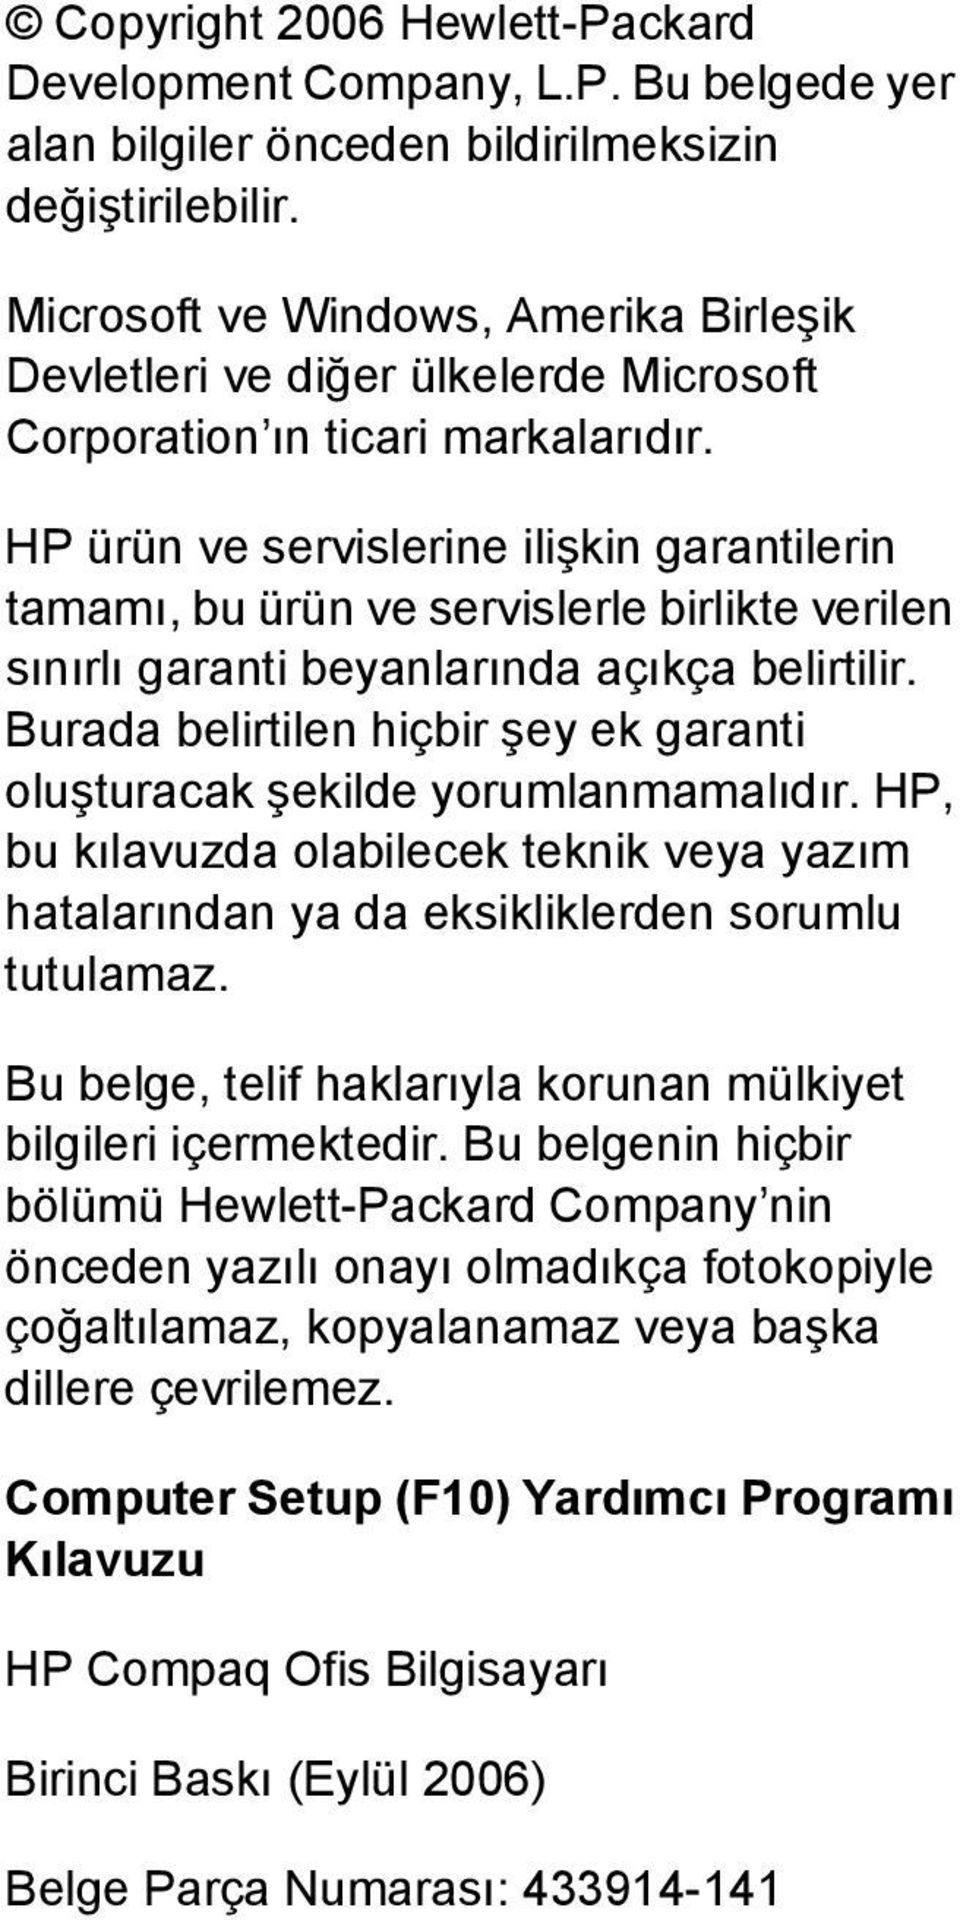 HP ürün ve servislerine ilişkin garantilerin tamamı, bu ürün ve servislerle birlikte verilen sınırlı garanti beyanlarında açıkça belirtilir.